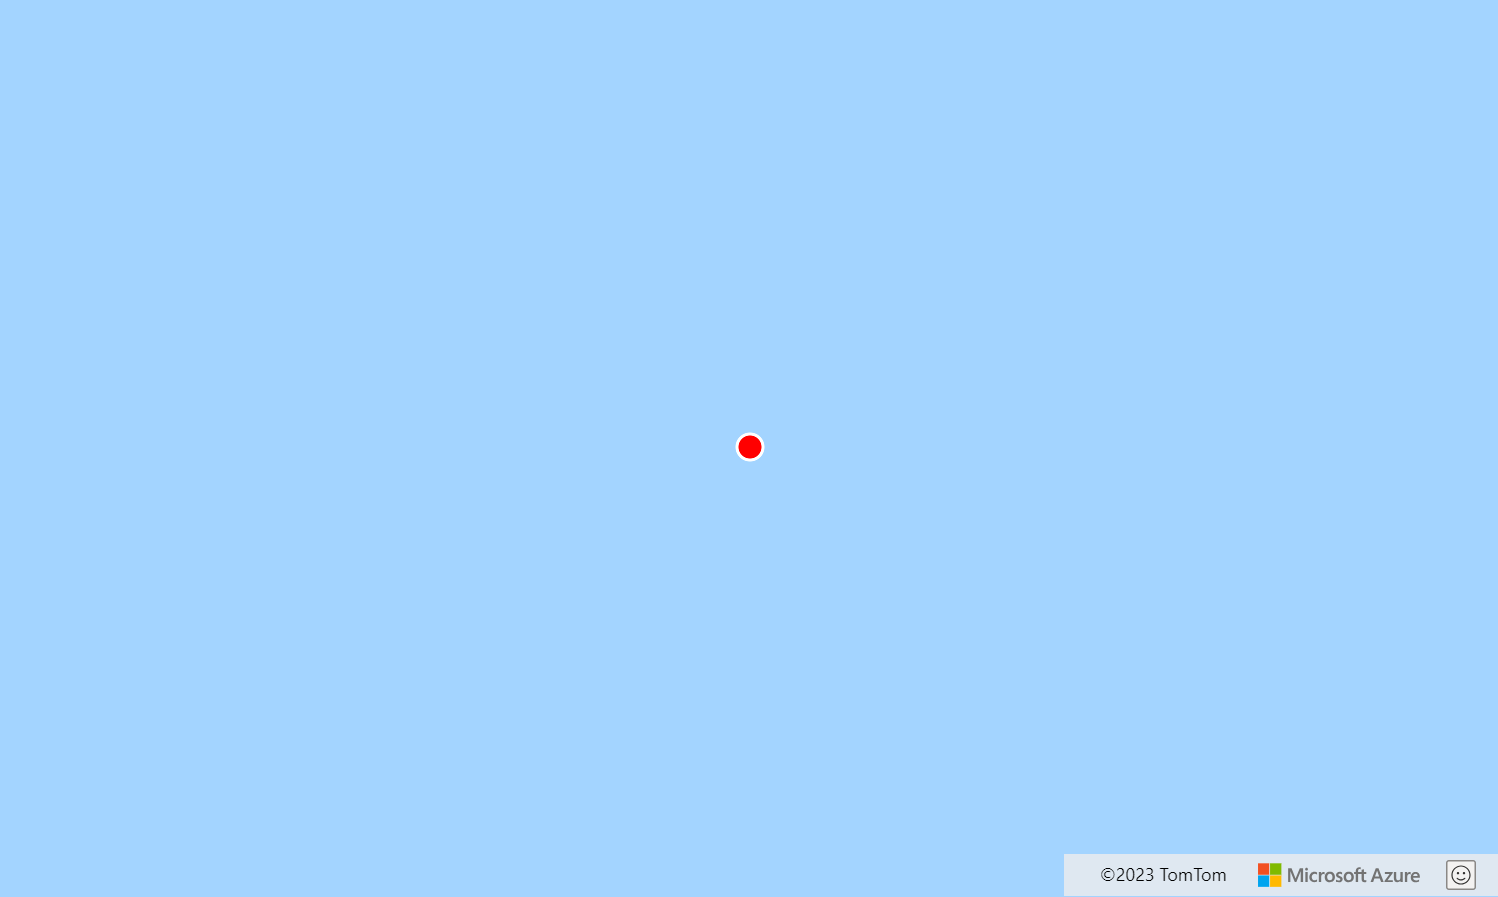 Снимок экрана: карта с координатами 0, 0, на котором показана красная точка над синей водой. Красная точка была добавлена с помощью слоя символов.